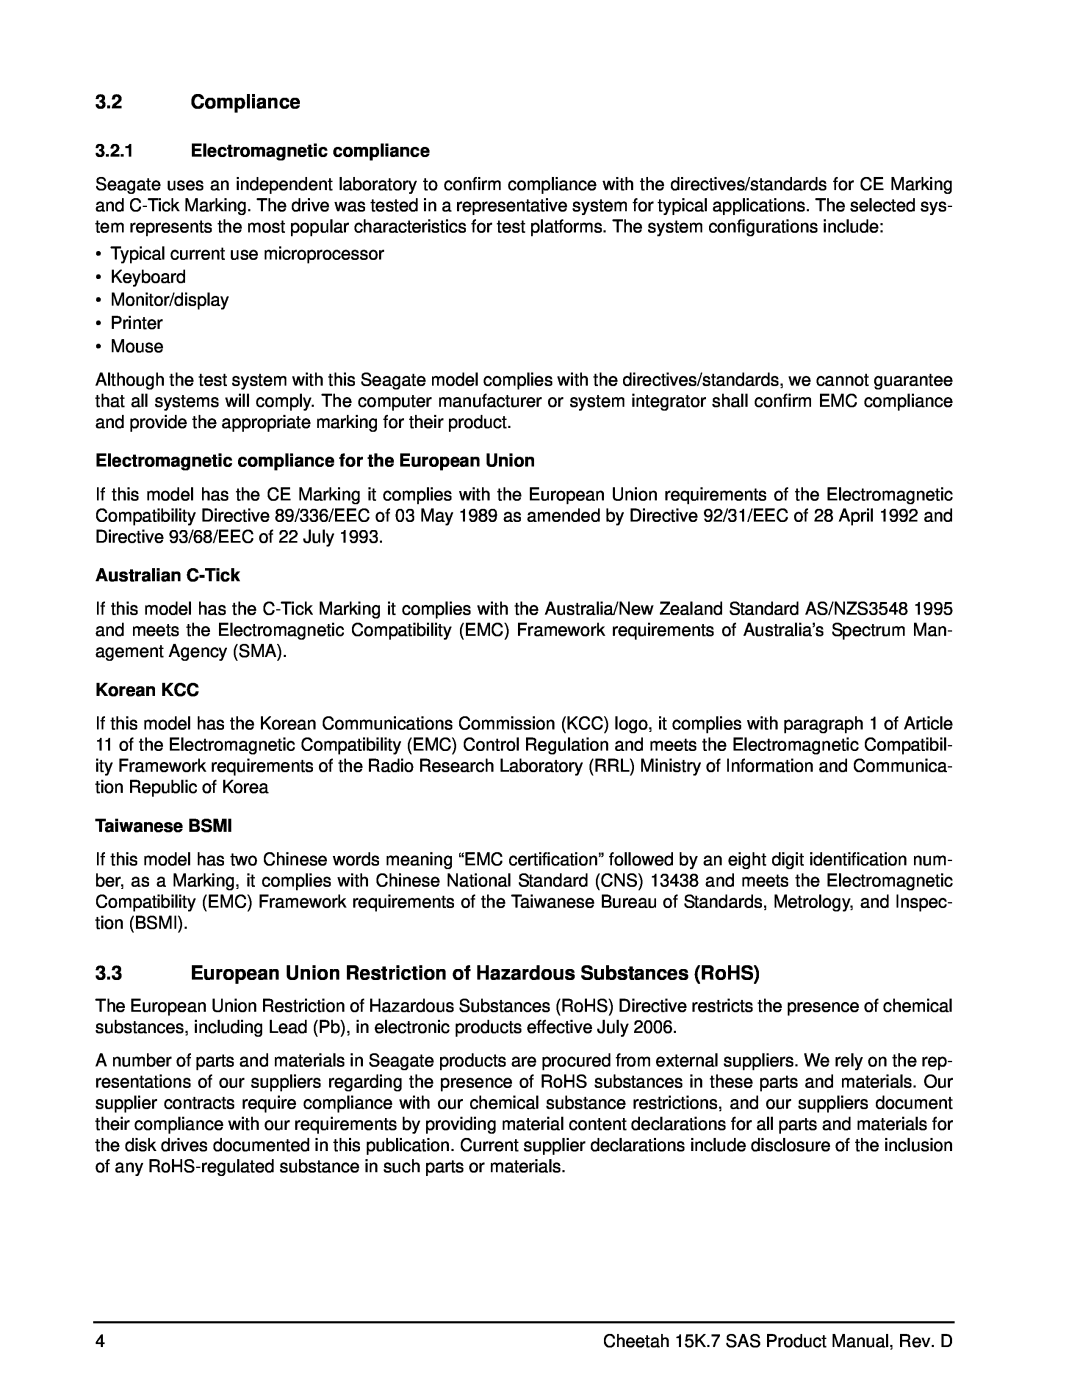 Seagate ST3450657SS manual Compliance, European Union Restriction of Hazardous Substances RoHS, Electromagnetic compliance 